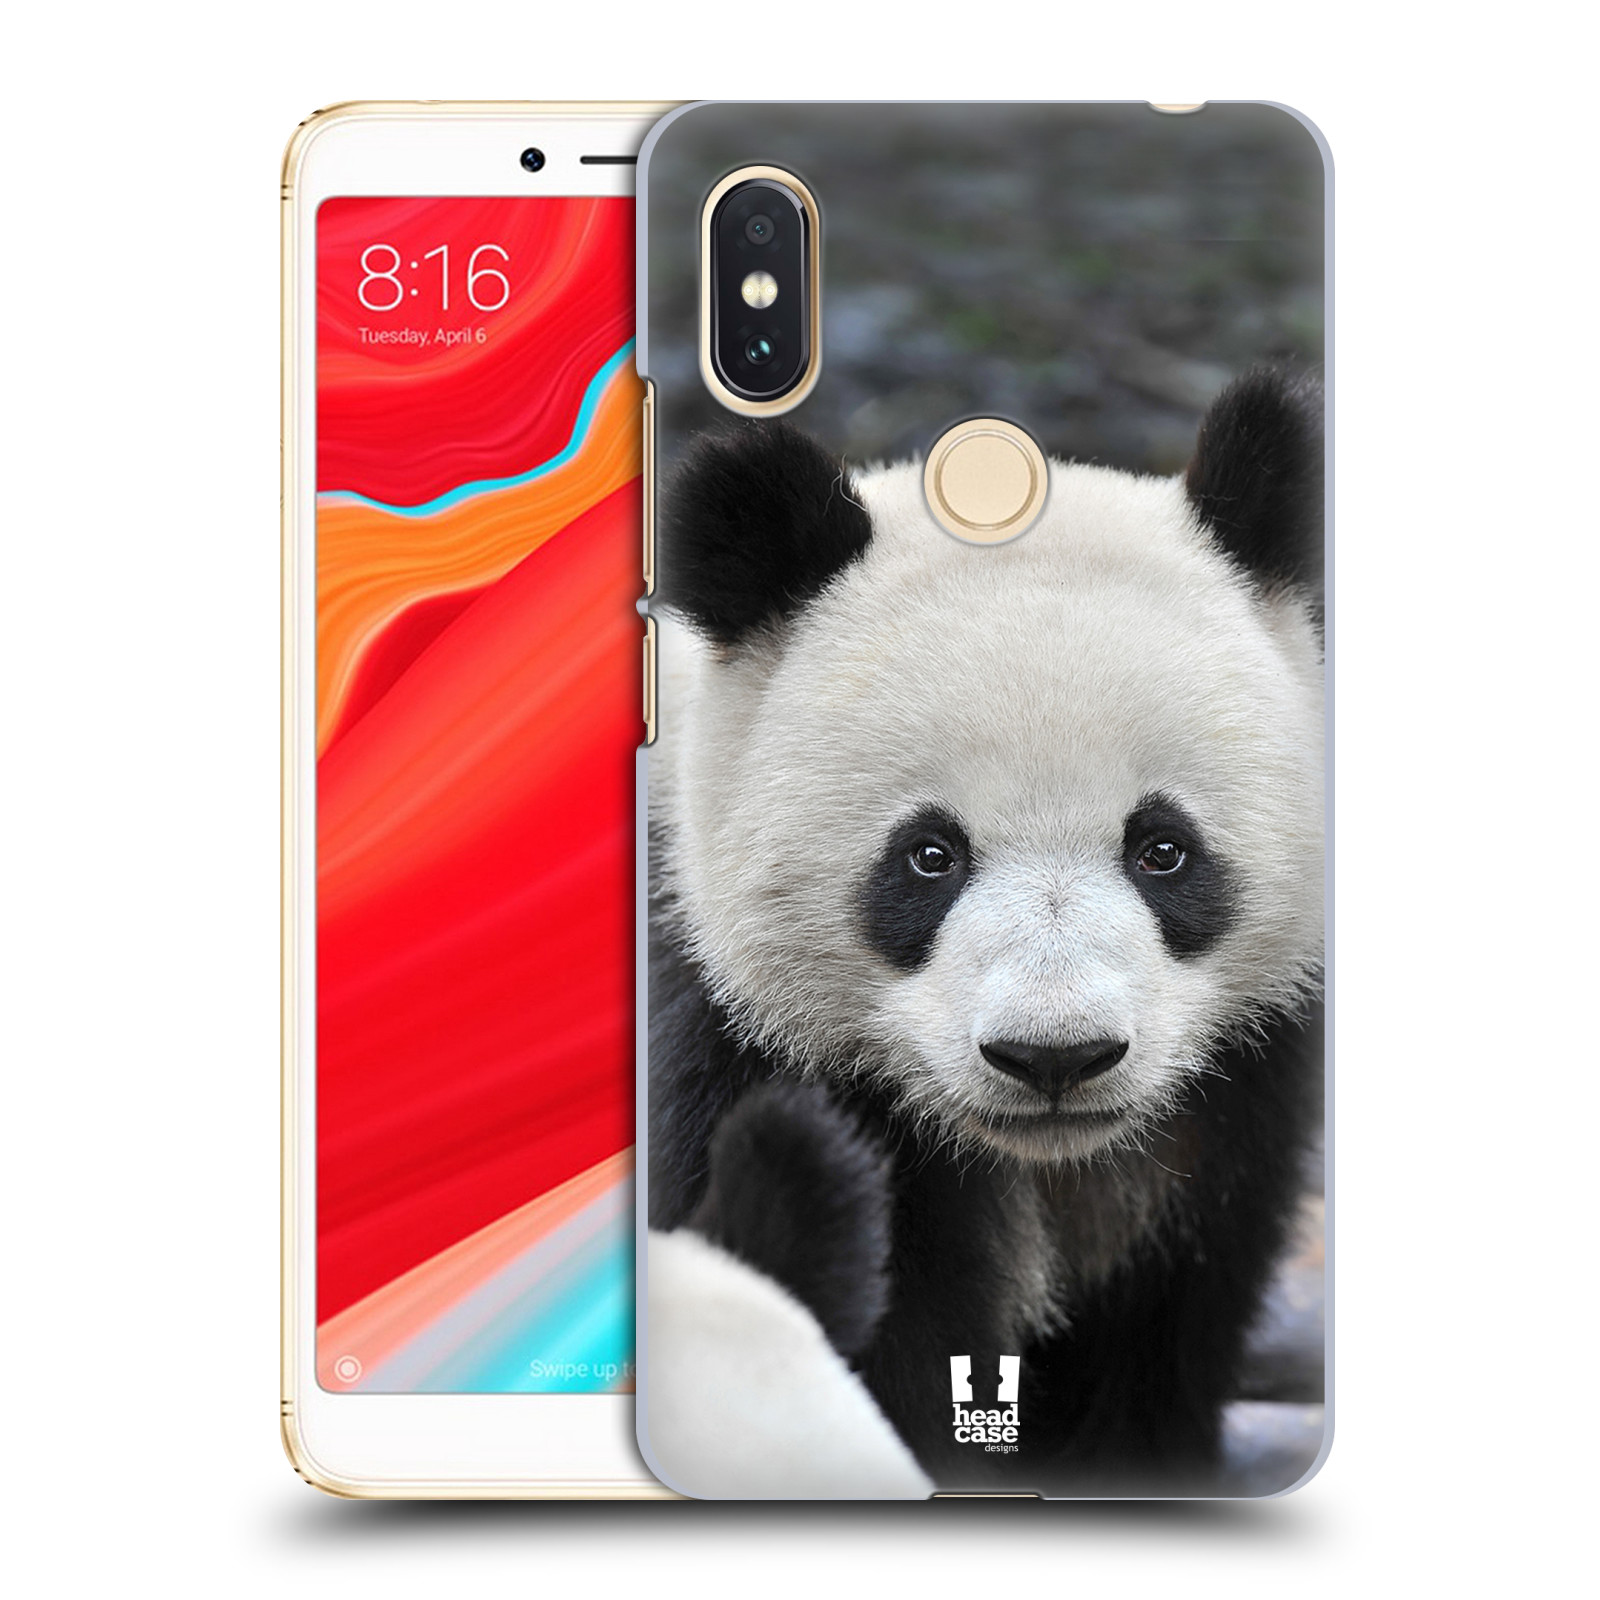 HEAD CASE plastový obal na mobil Xiaomi Redmi S2 vzor Divočina, Divoký život a zvířata foto MEDVĚD PANDA